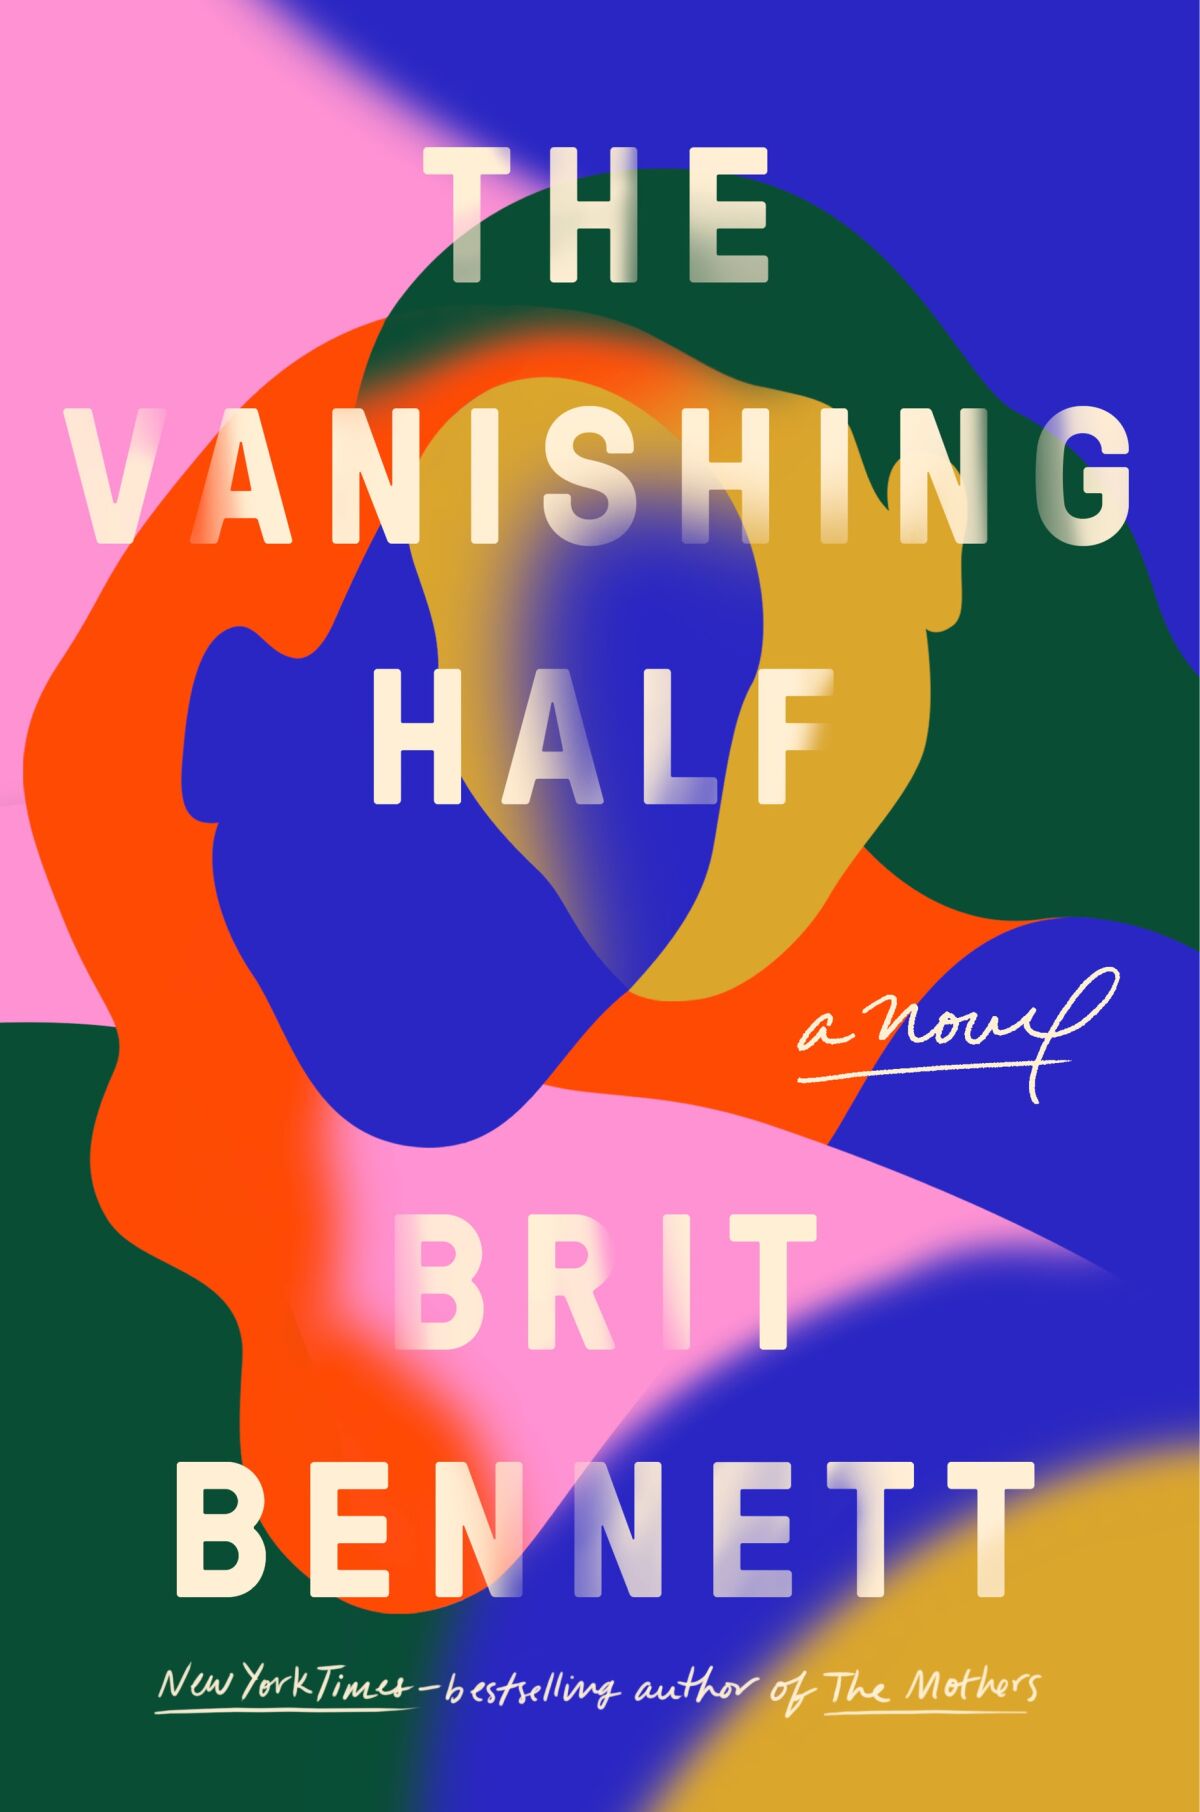 "The Vanishing Half"